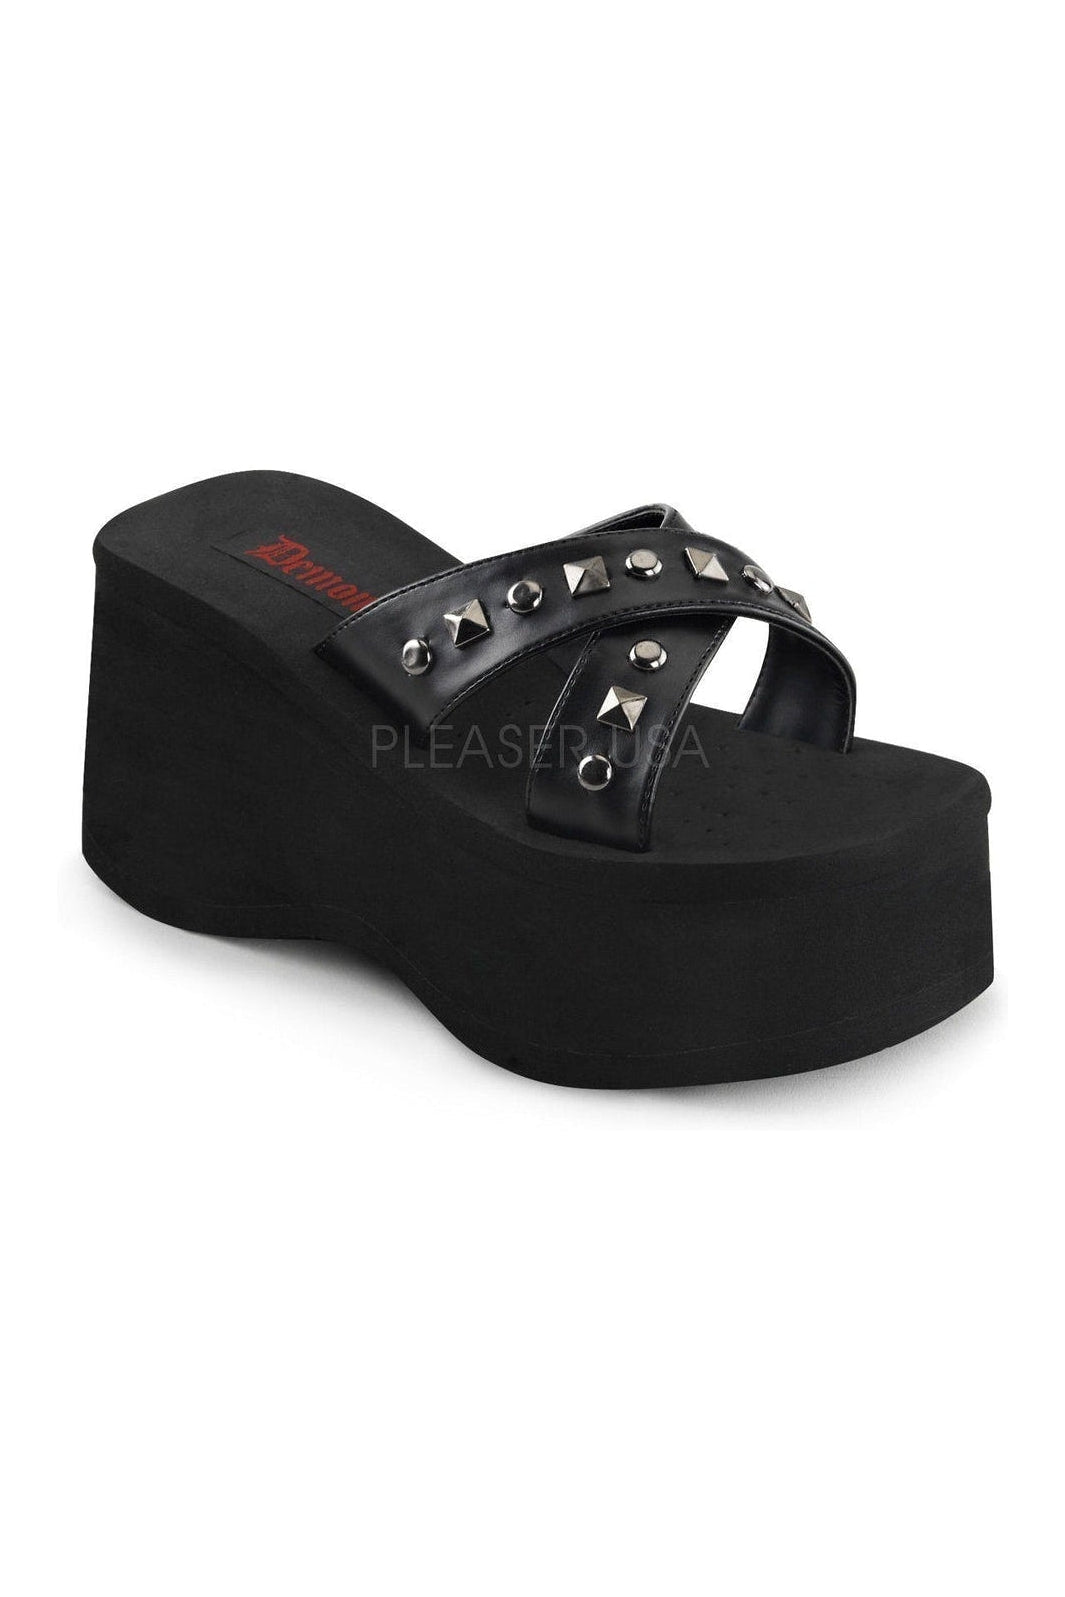 FUNN-29 Sandal | Black Faux Leather-Demonia-Black-Sandals-SEXYSHOES.COM